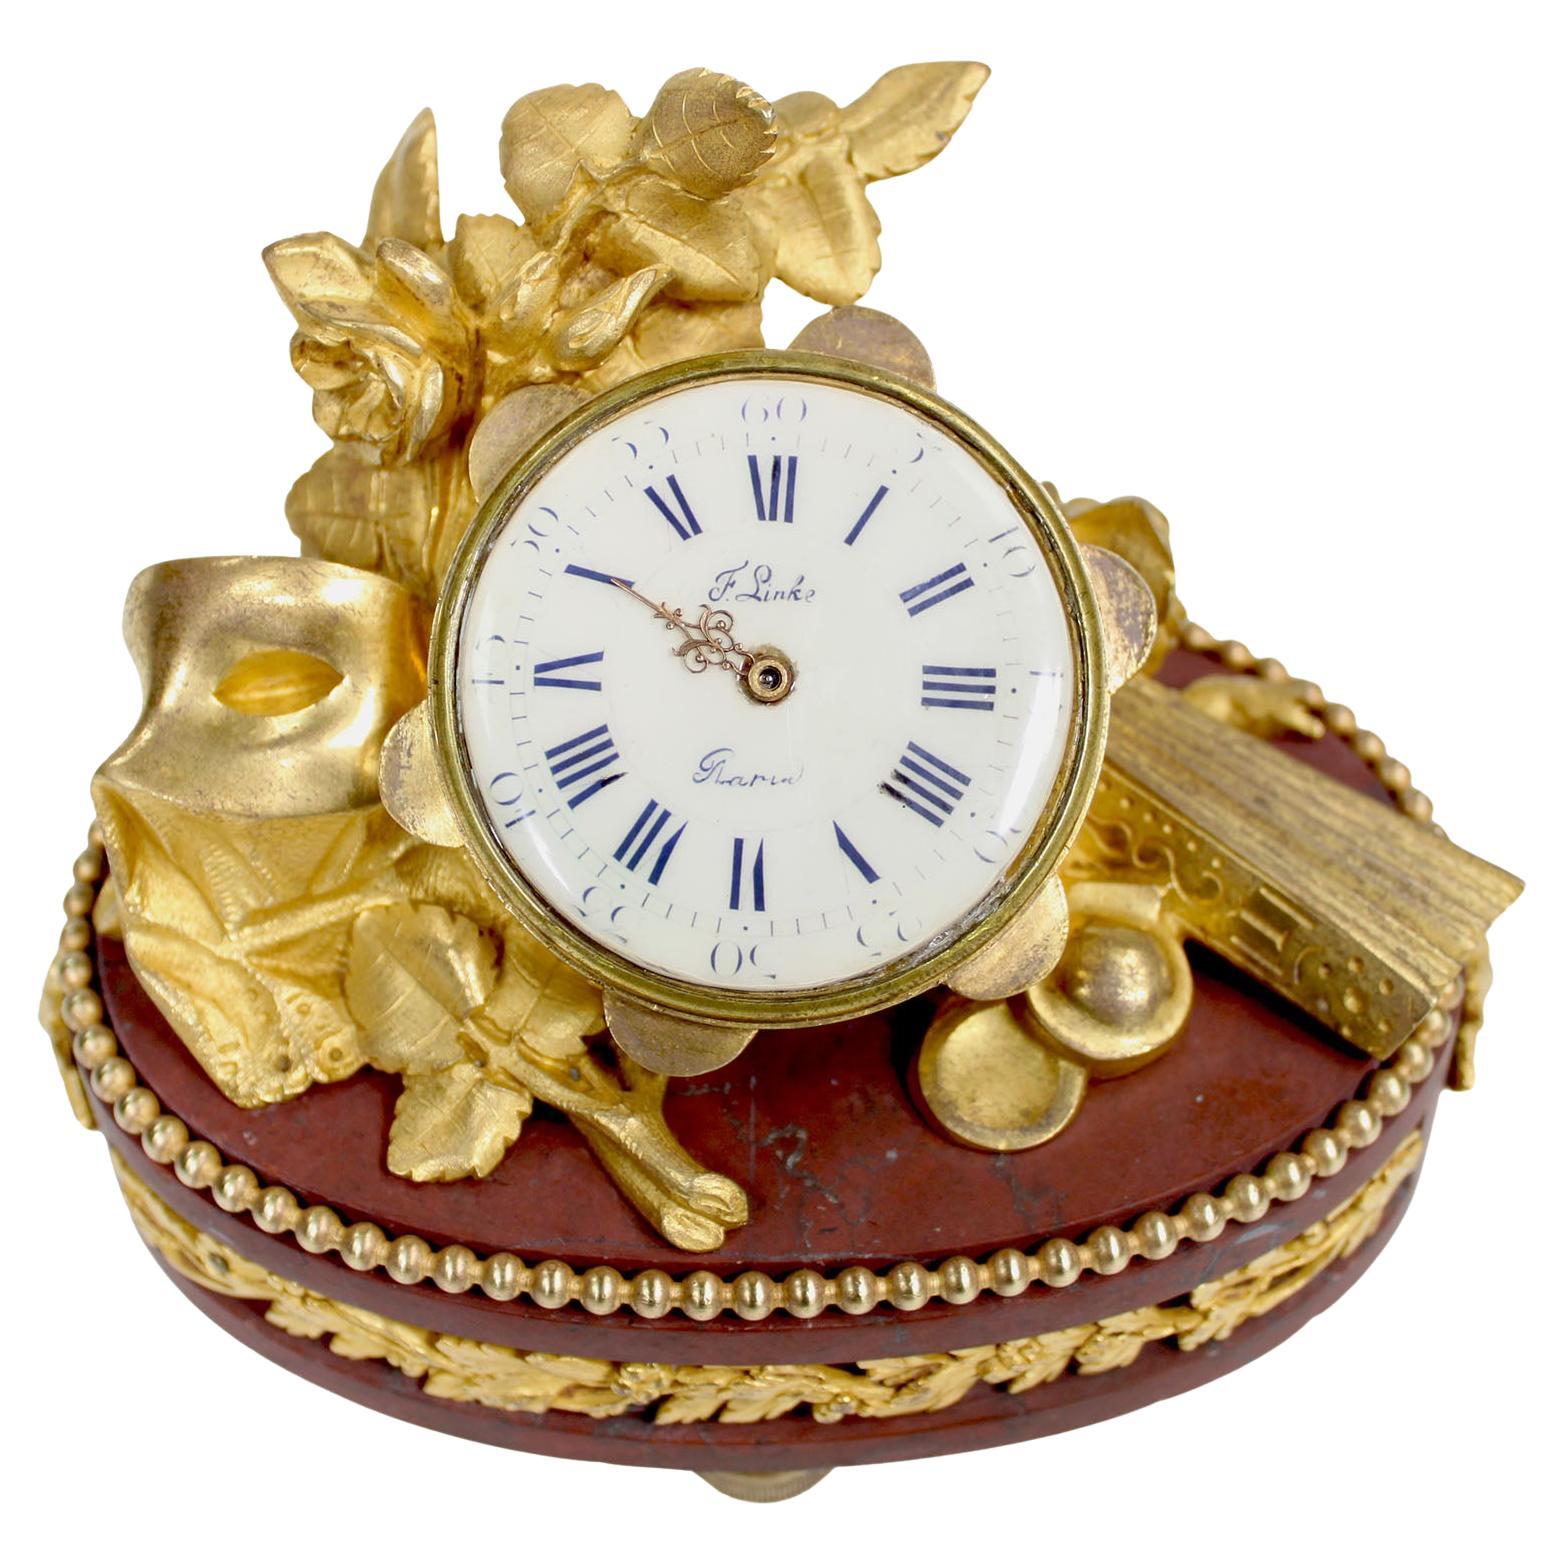 Fine Gilt-Bronze & Rouge Griotte Marble Table Clock - François Linke Index No 86